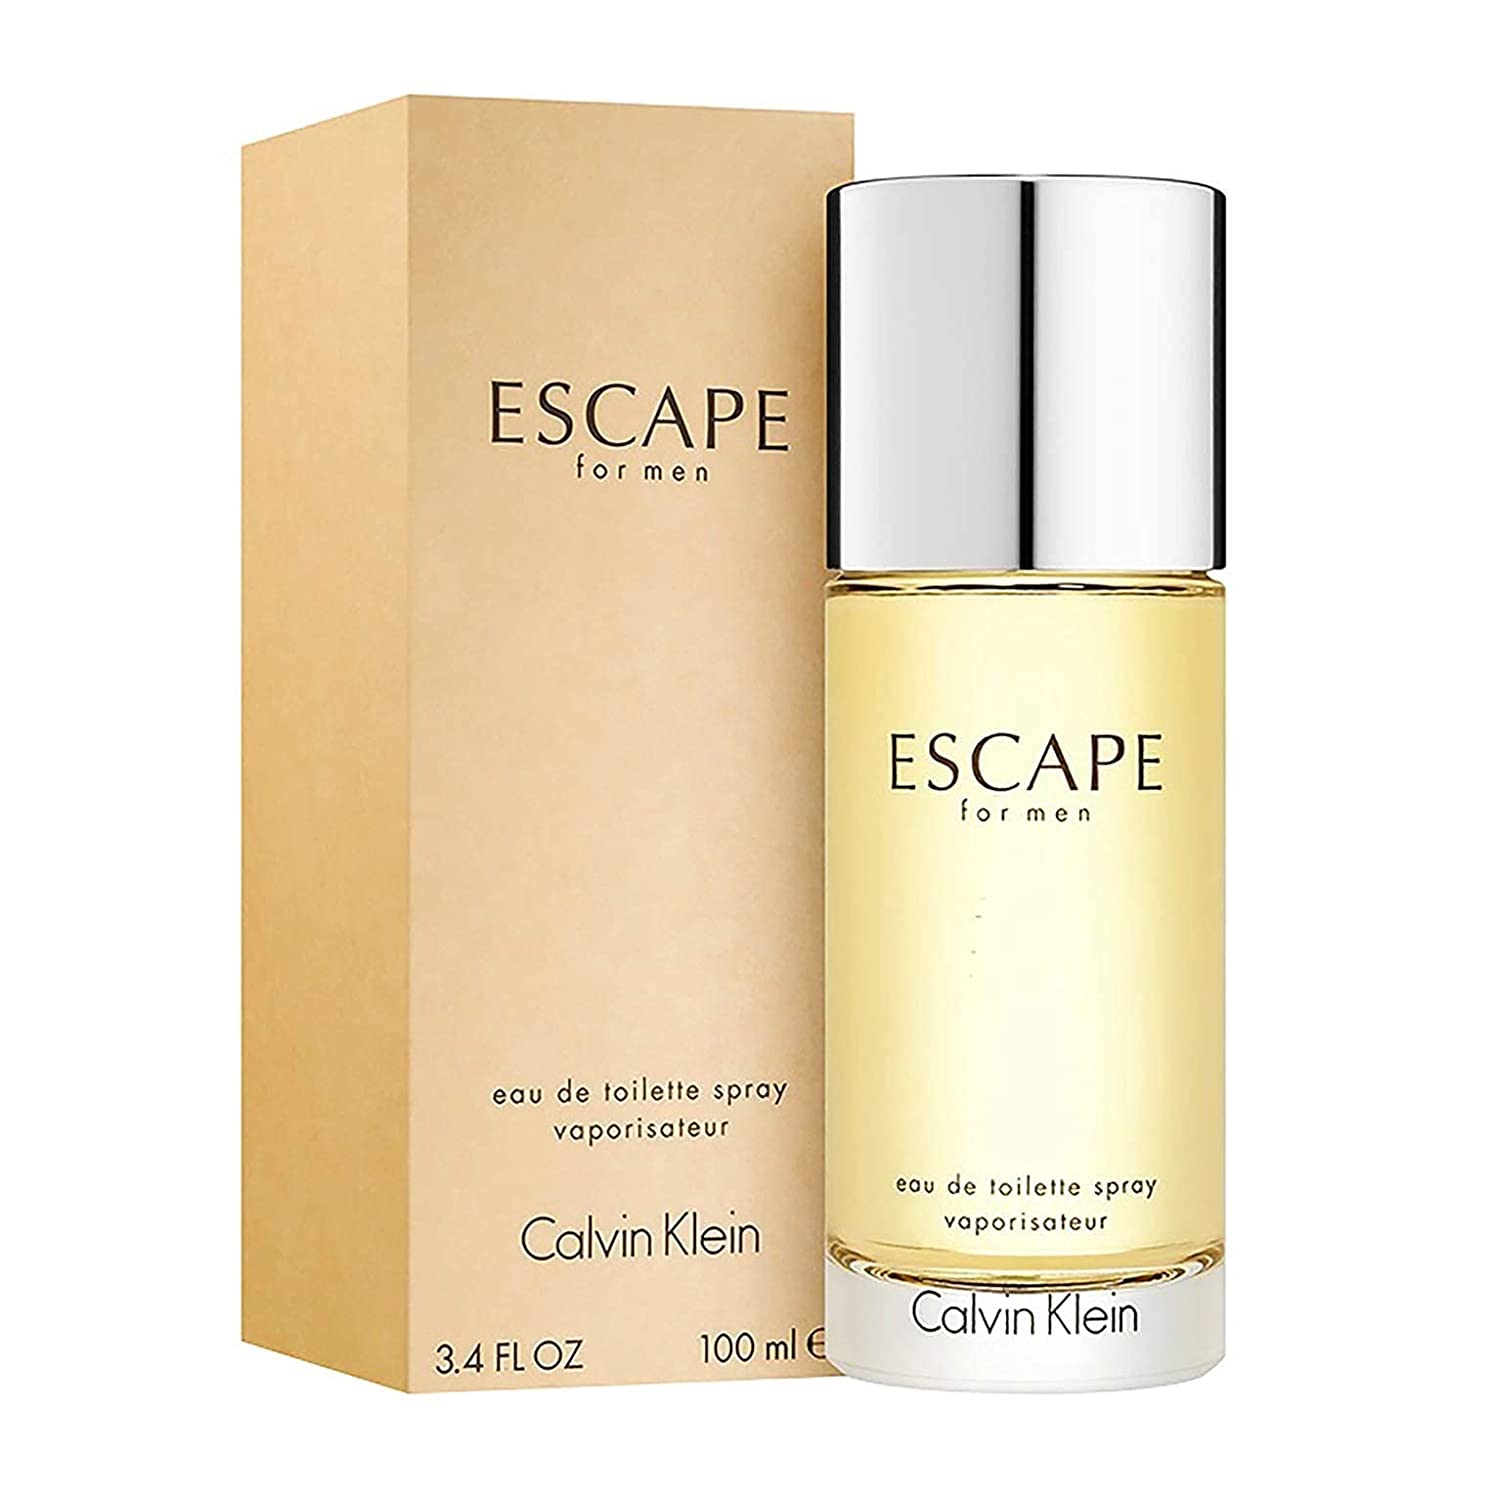 Escape by Calvin Klein 3.4 oz EDT Spray for Men